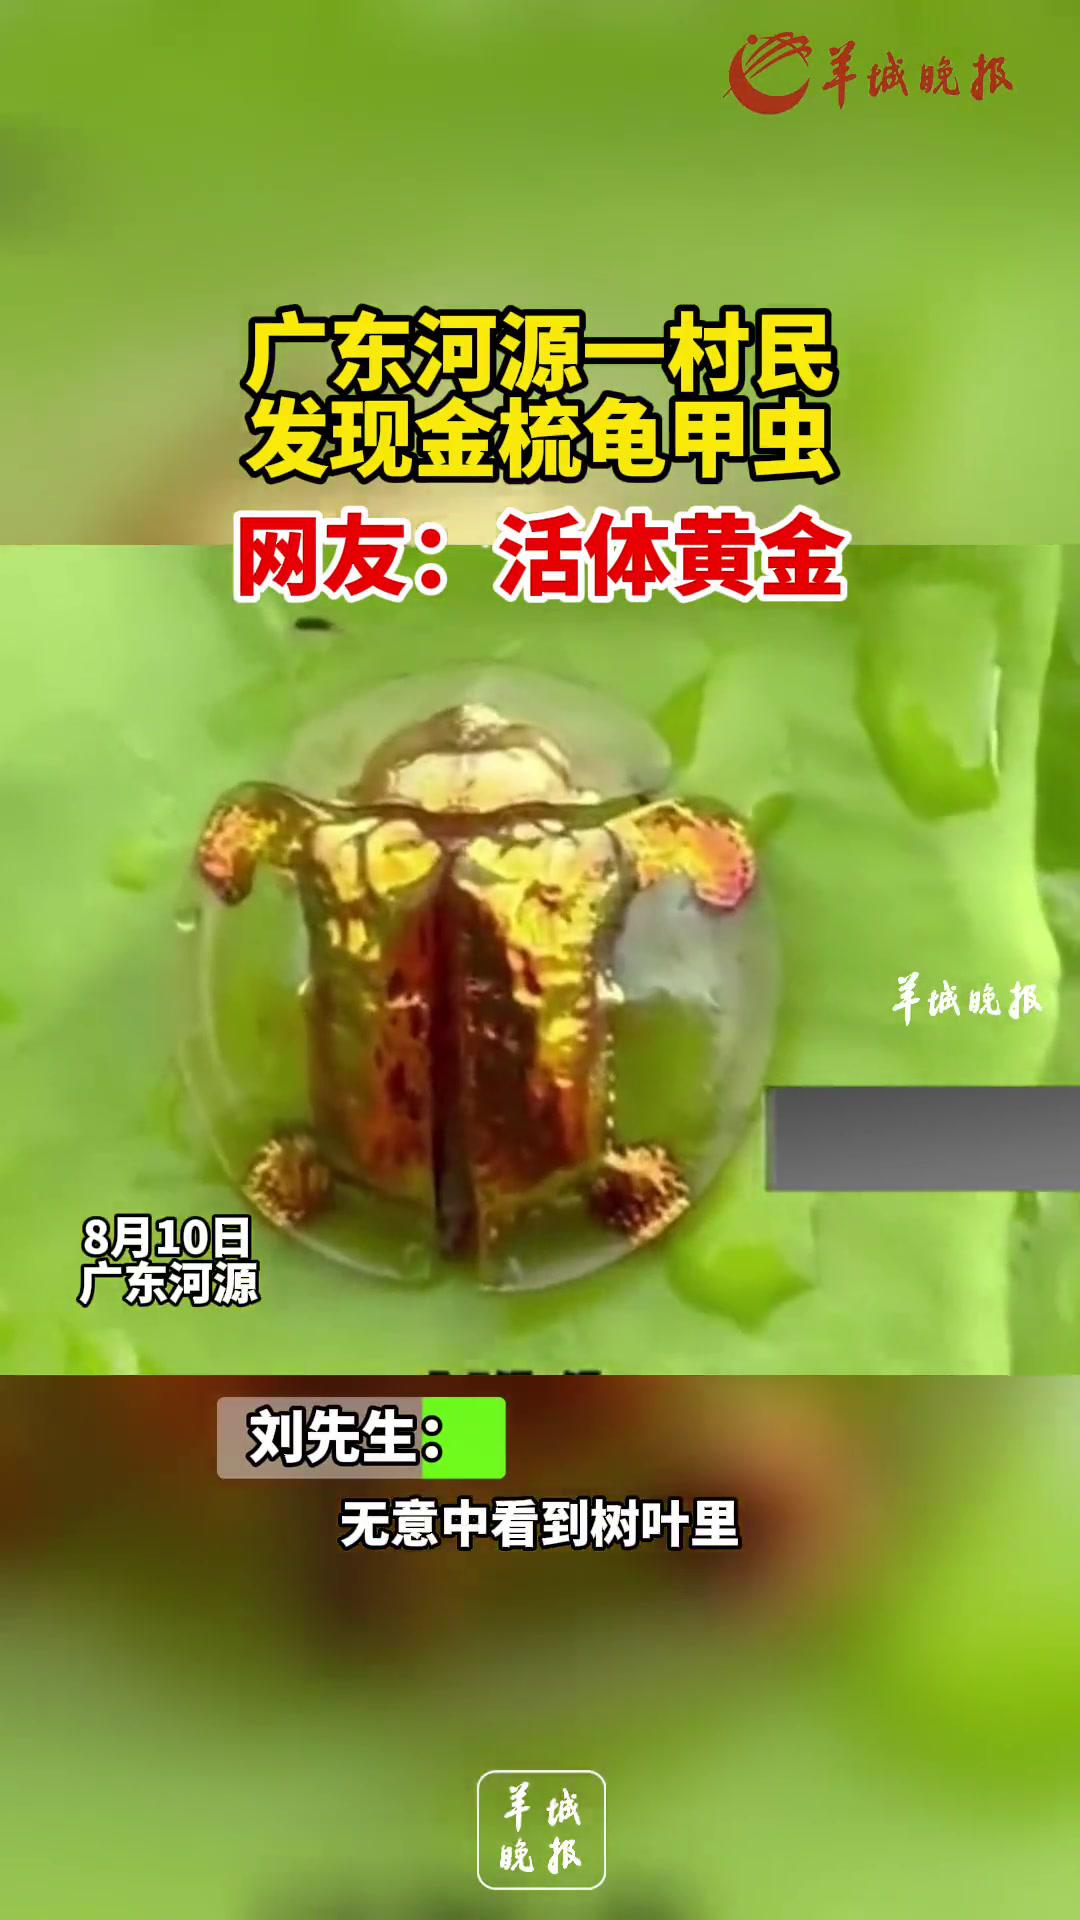 广东河源一村民发现金梳龟甲虫,网友:活体黄金